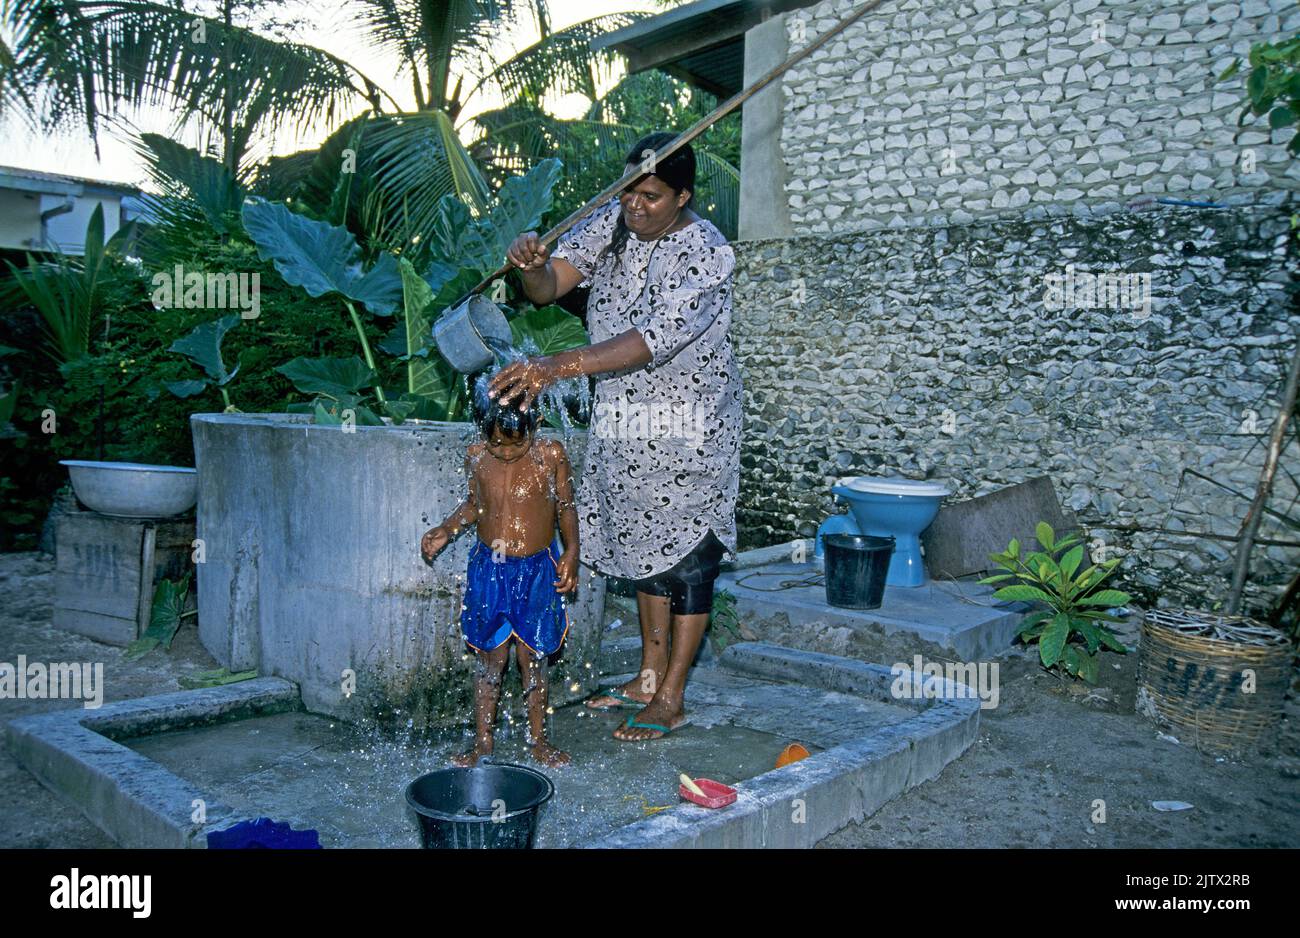 La femme maldivienne passe une douche à son fils, île d'origine Mahembadhoo, Maldives, océan Indien, Asie Banque D'Images